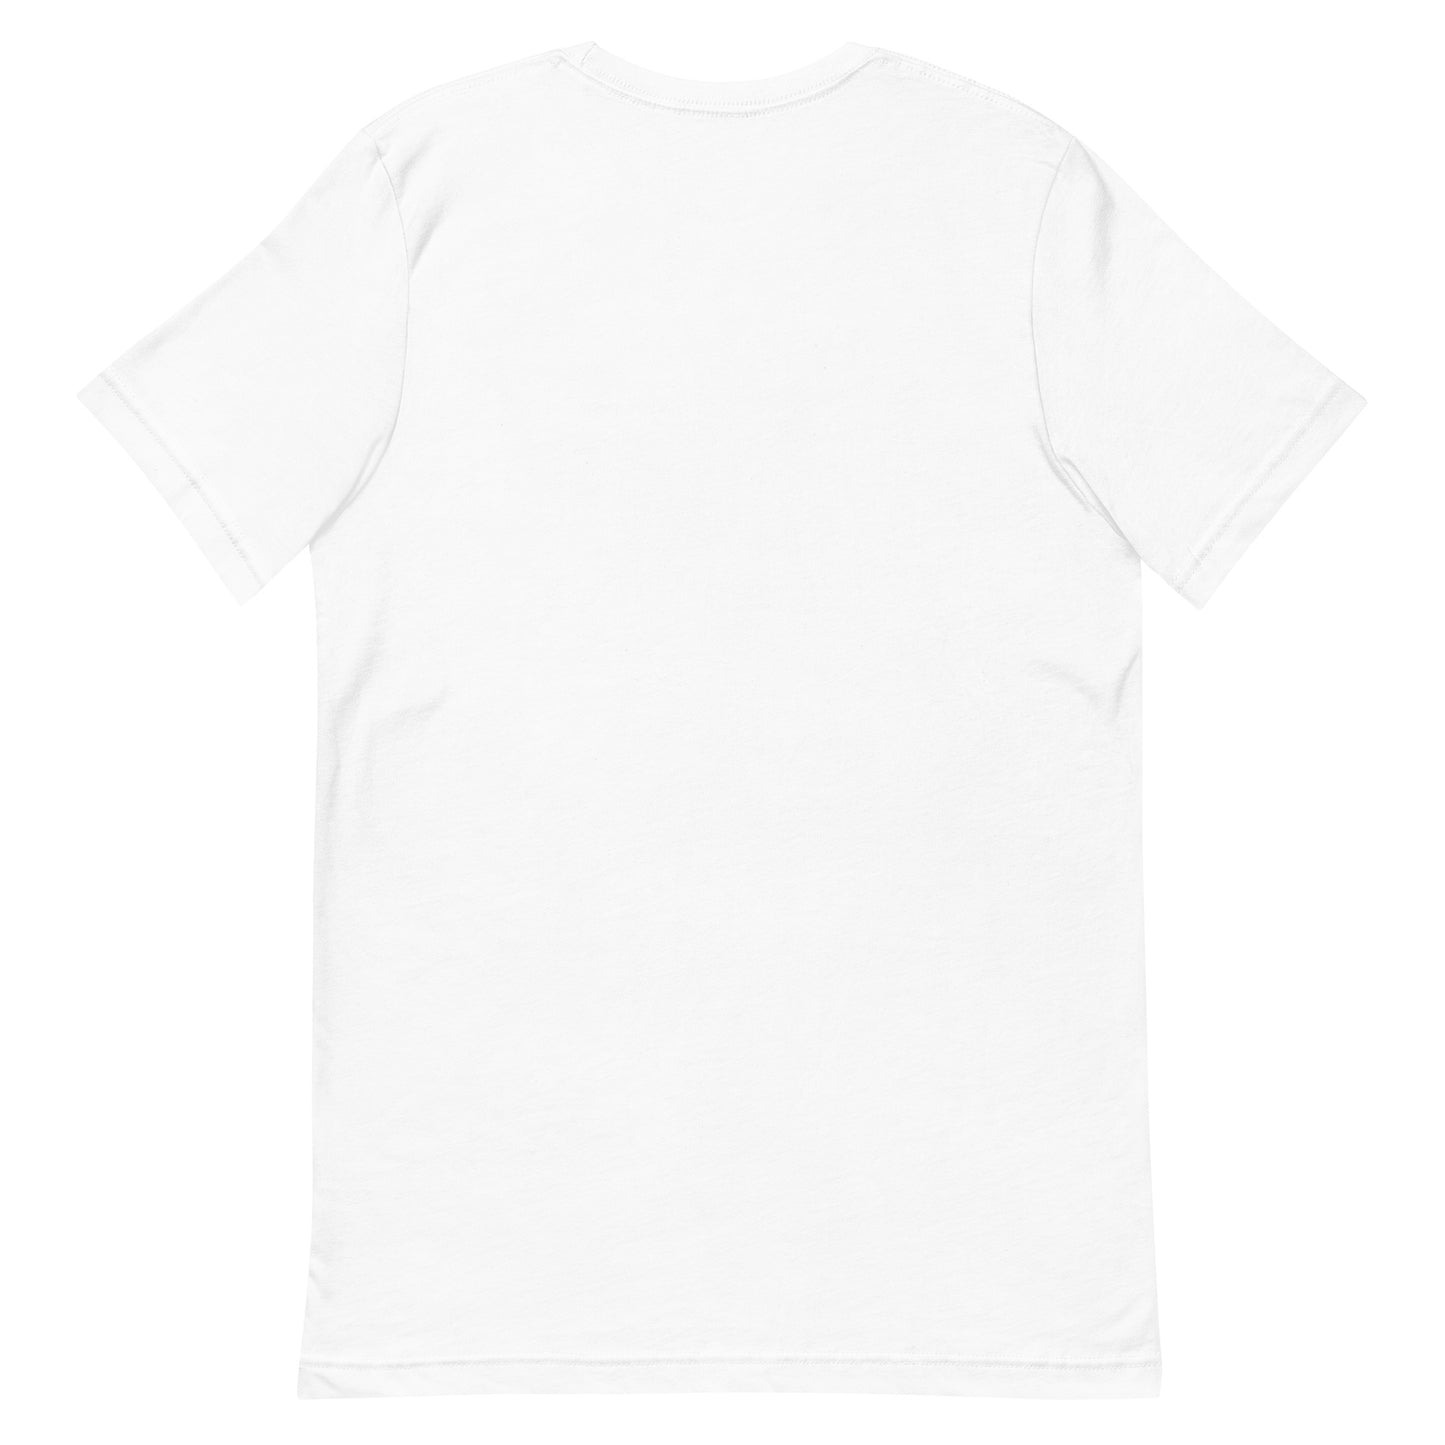 Unisex t-shirt "52 TAKARABUNE" White